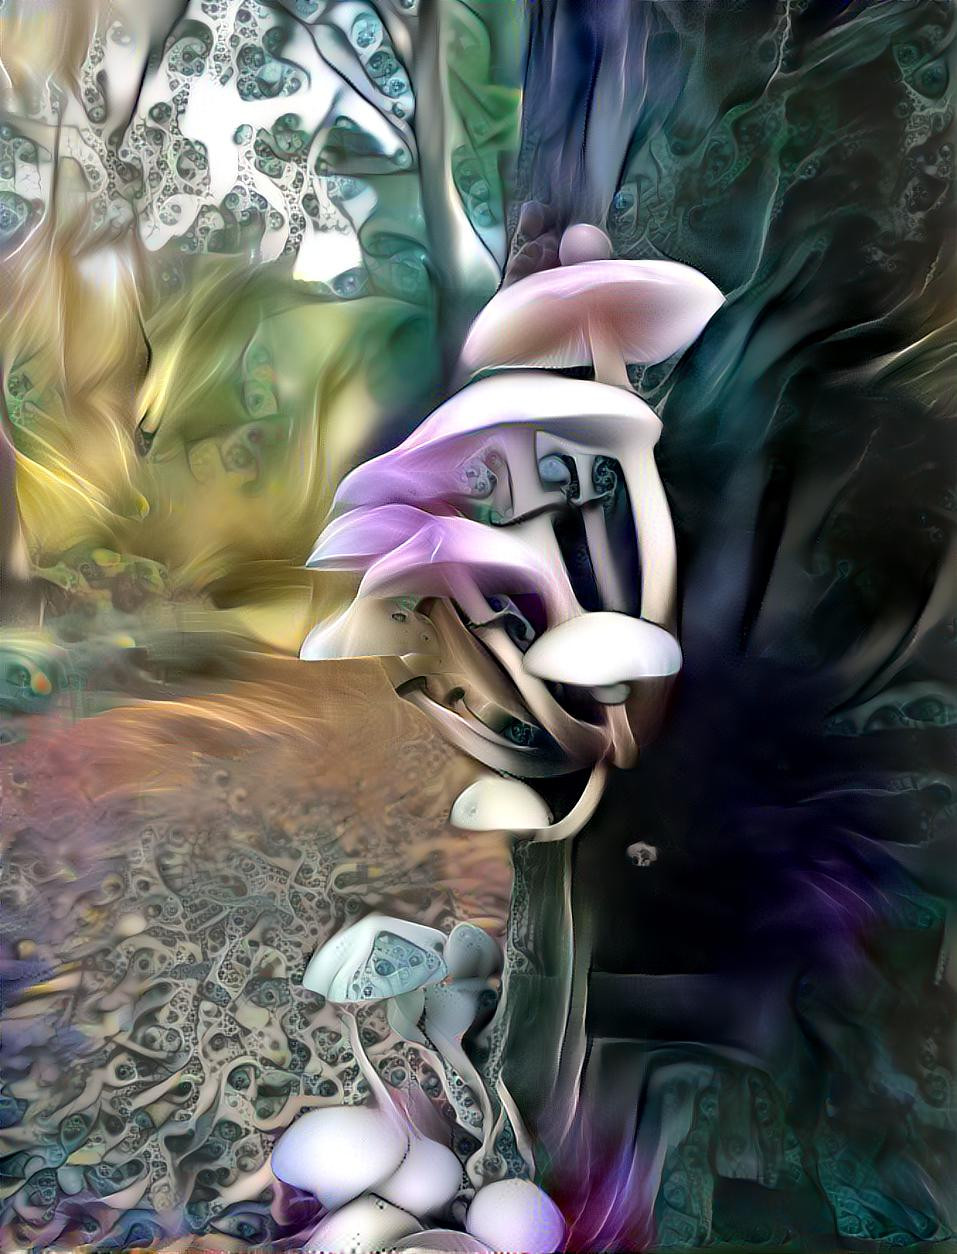 Floral shrooms